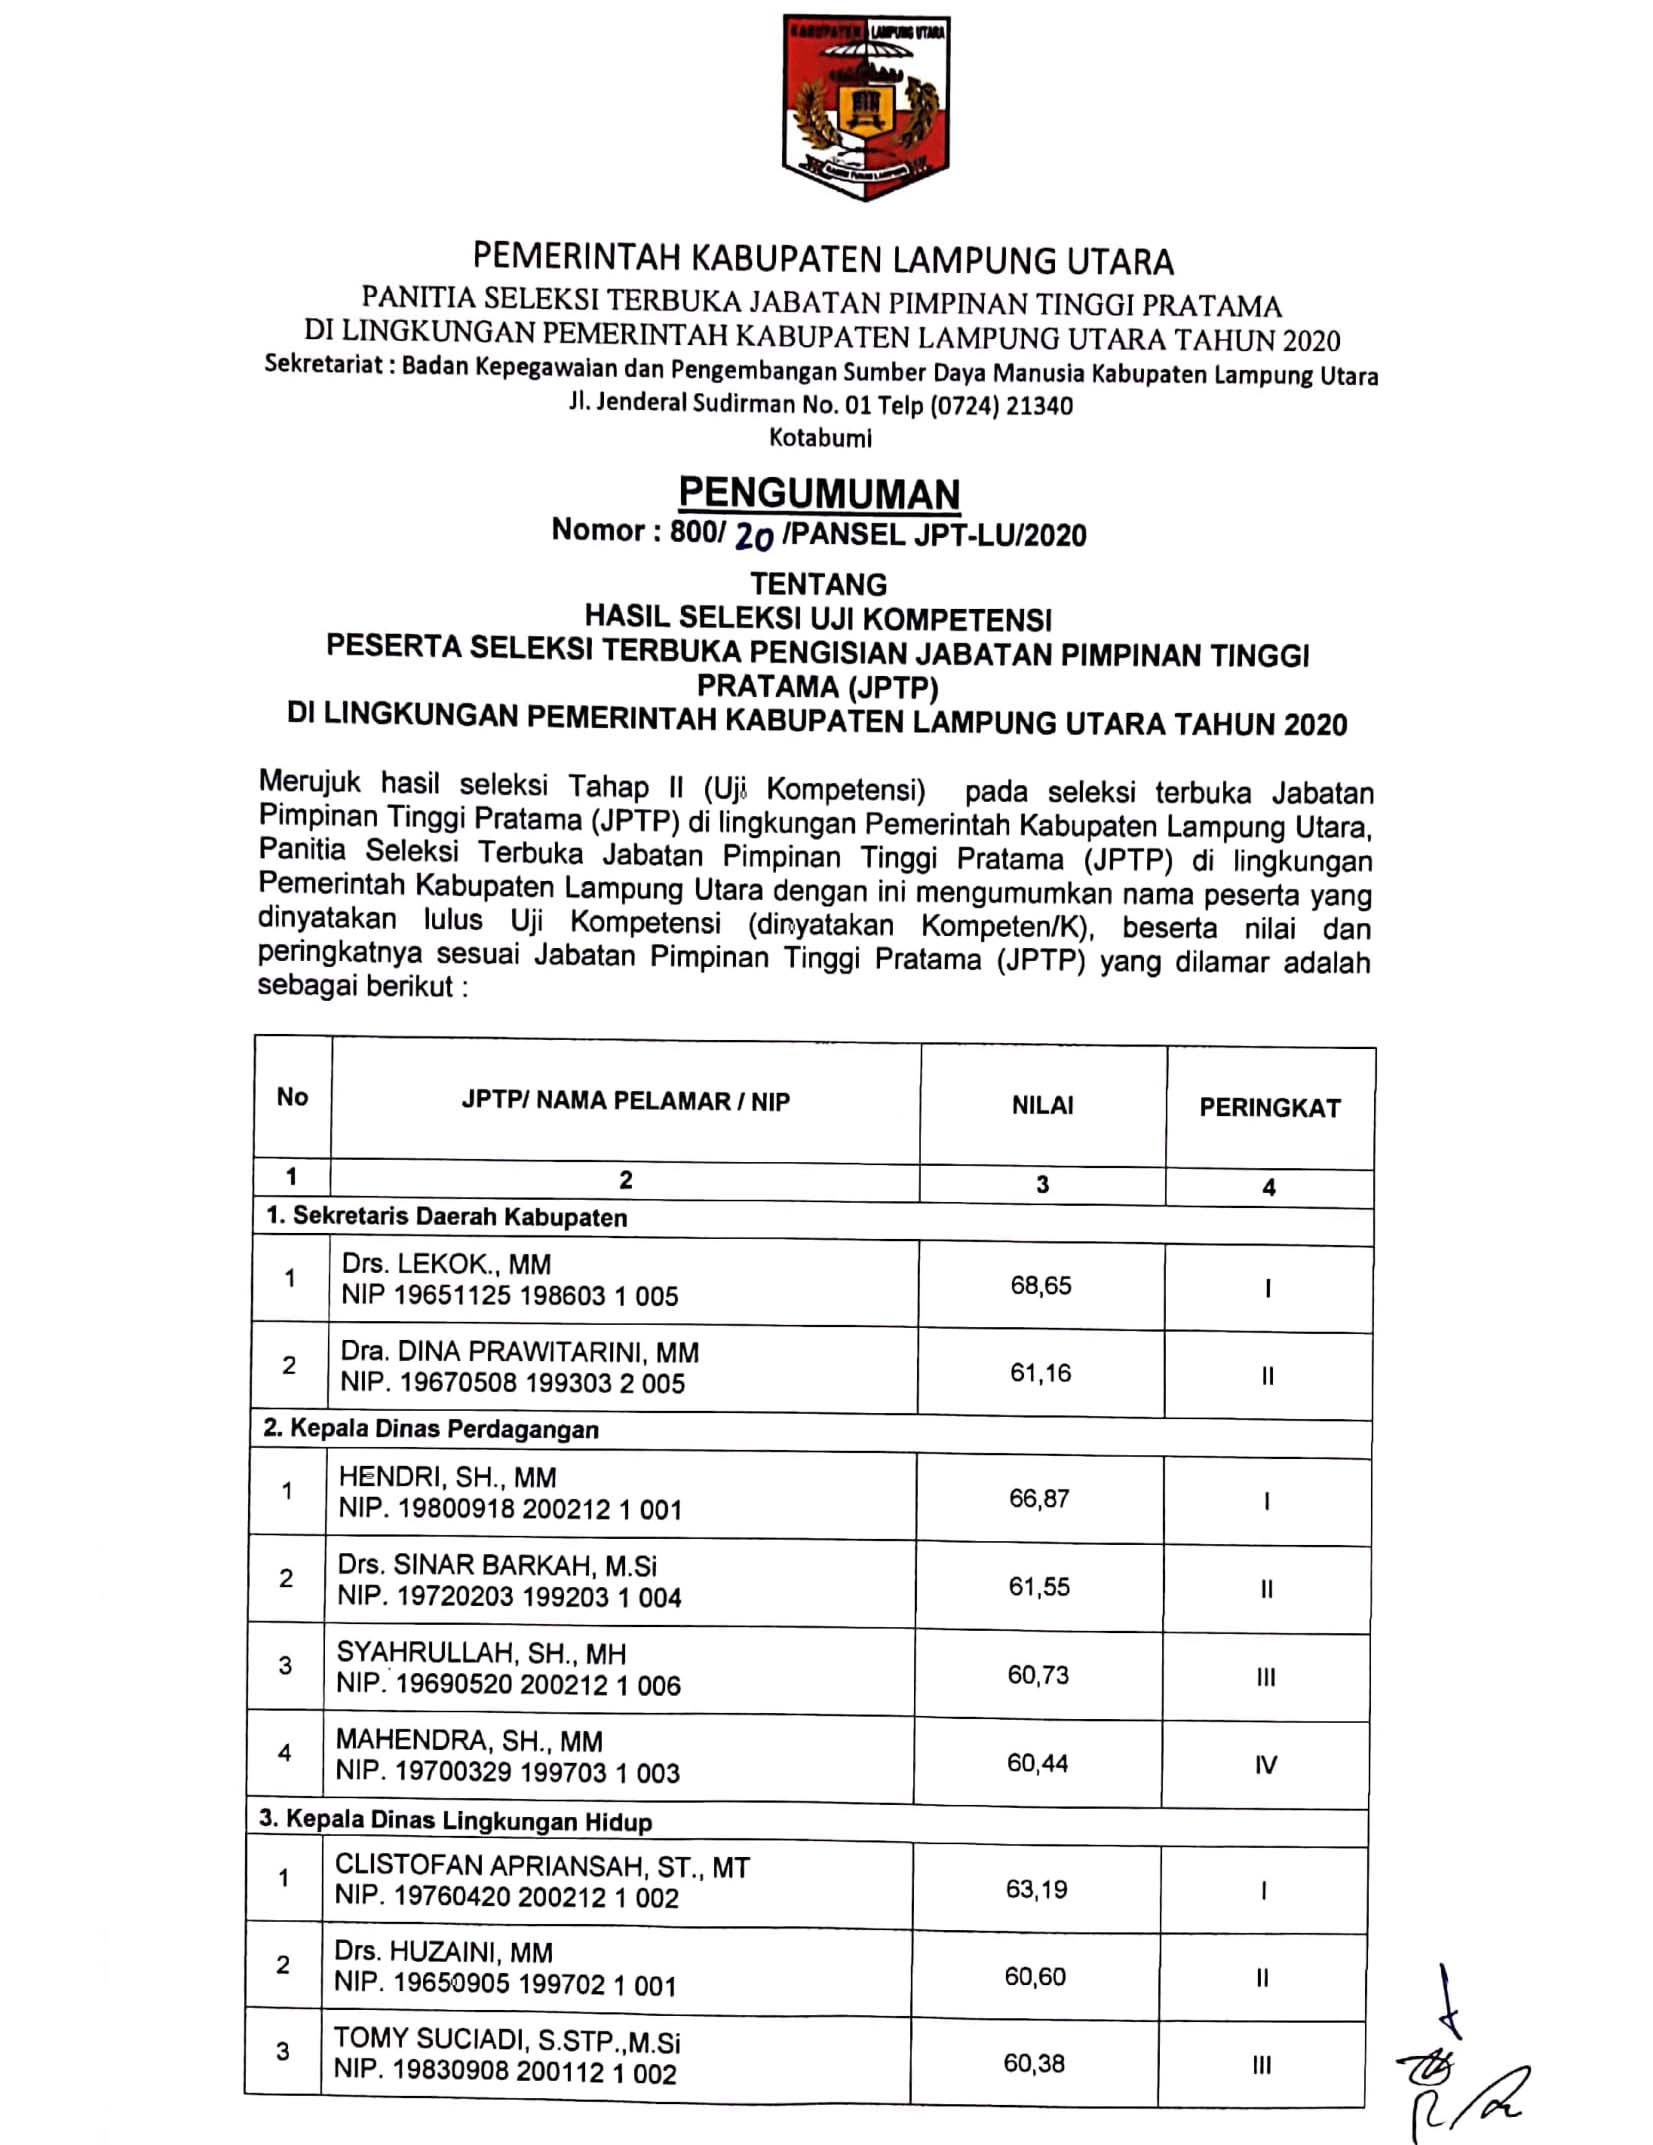 Pengumuman JPTP 2020 Tahap II Pemkab Lampung Utara